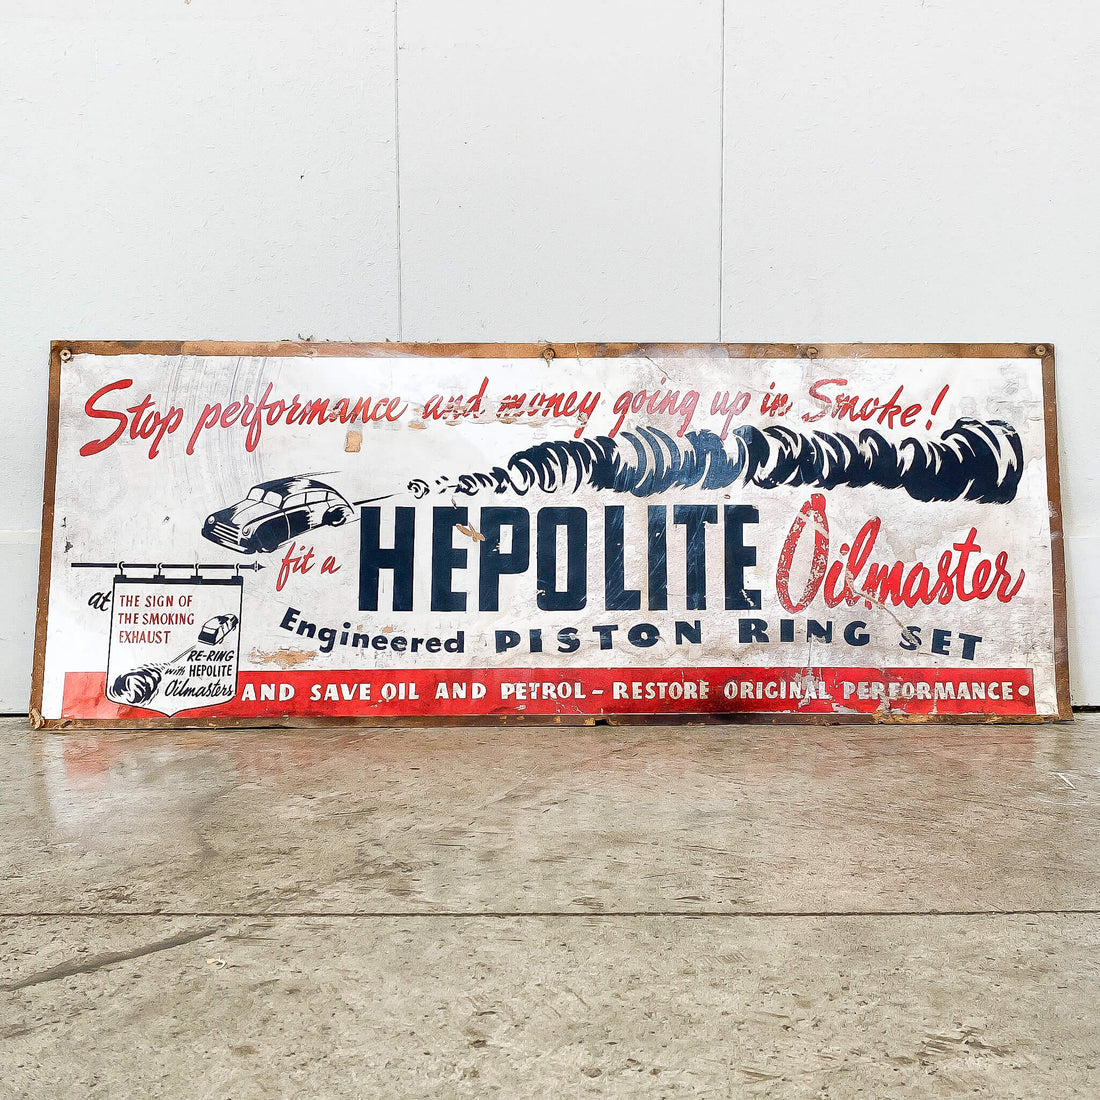 Hepolite Oilmaster Sign